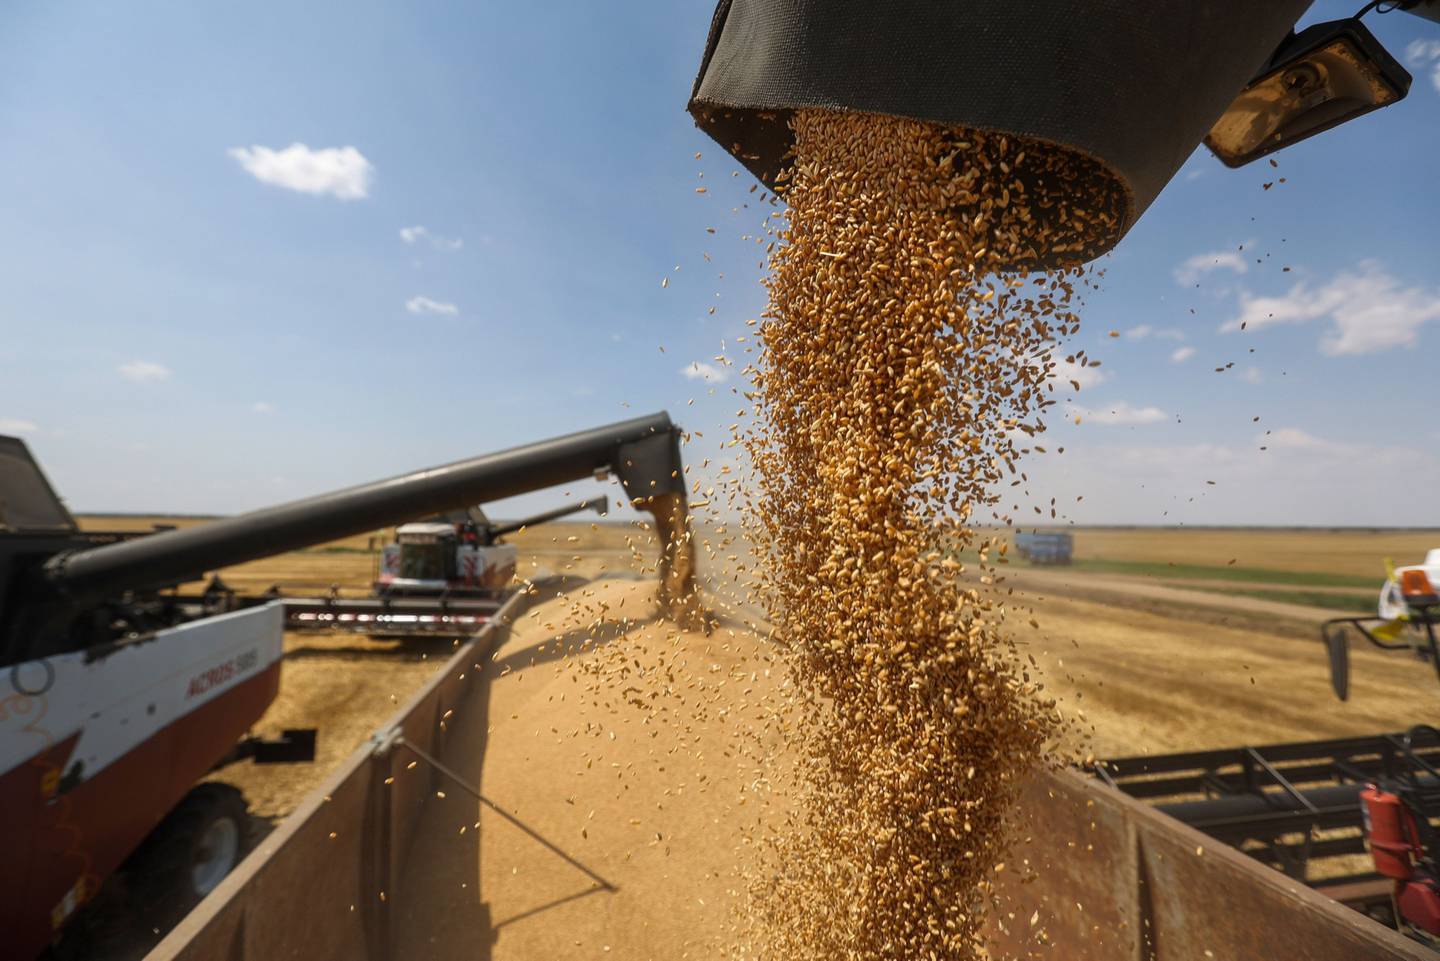 Rusia ha seguido enviando su trigo al precio ahora más alto. Fotógrafo: Andrey Rudakov/Bloomberg